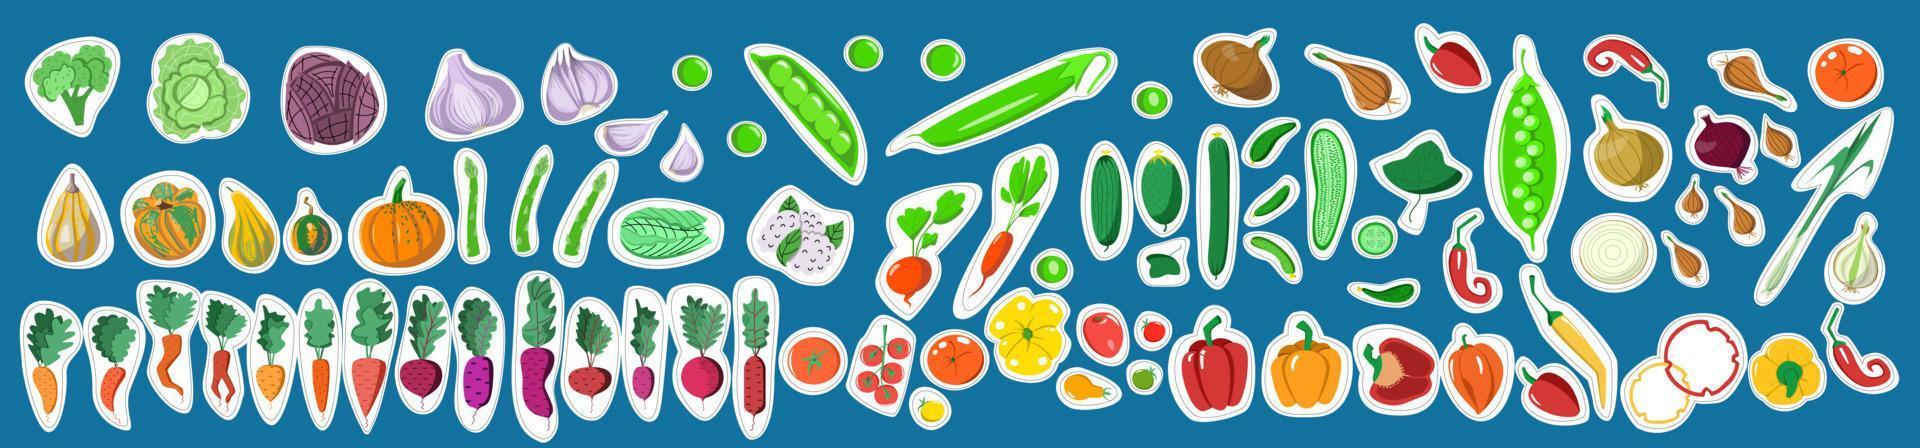 stickers met een set groenten. vectorillustratie in een platte cartoon-stijl op een blauwe achtergrond. vector